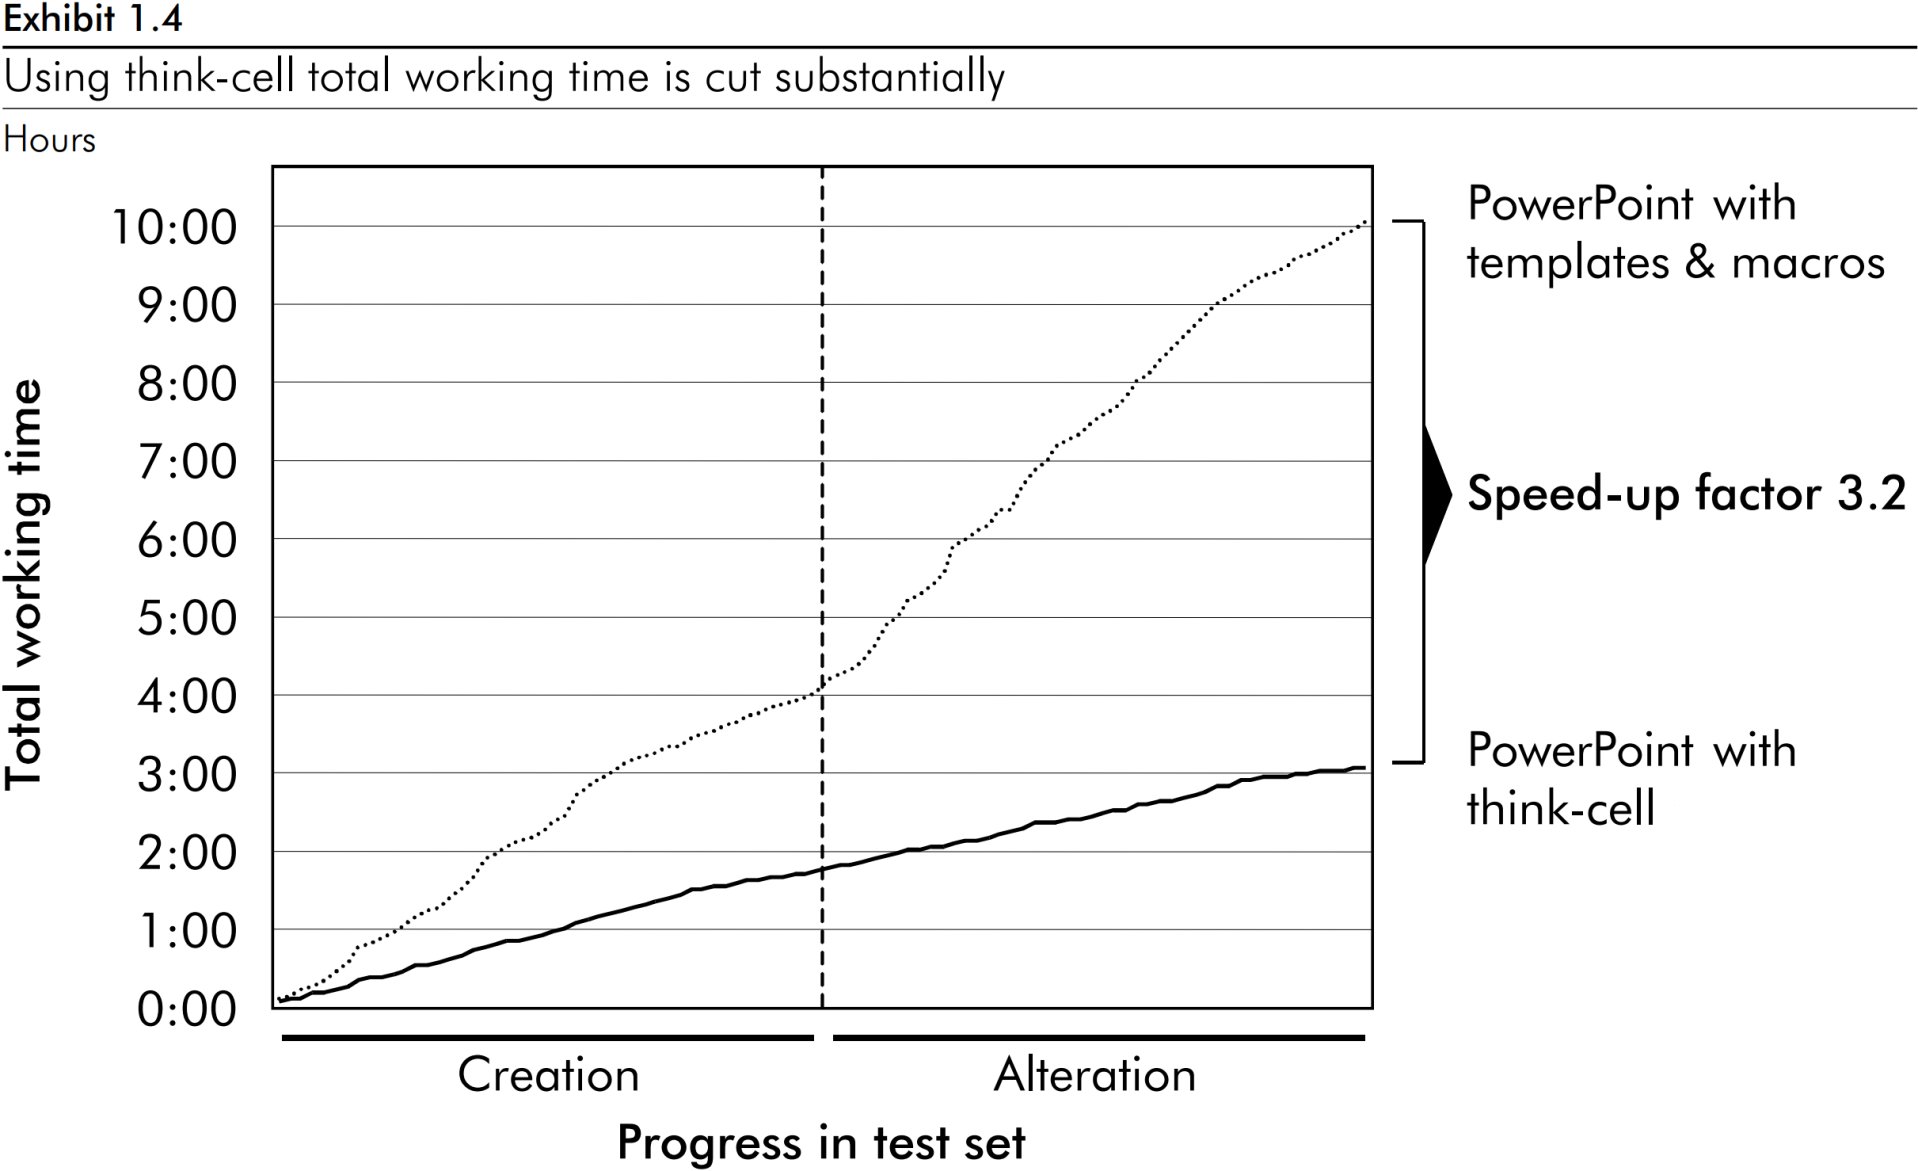 مخطط خطي يوضح عامل إسراع بنسبة 3.2 في إجمالي وقت العمل في المخططات باستخدام برنامج think-cell.